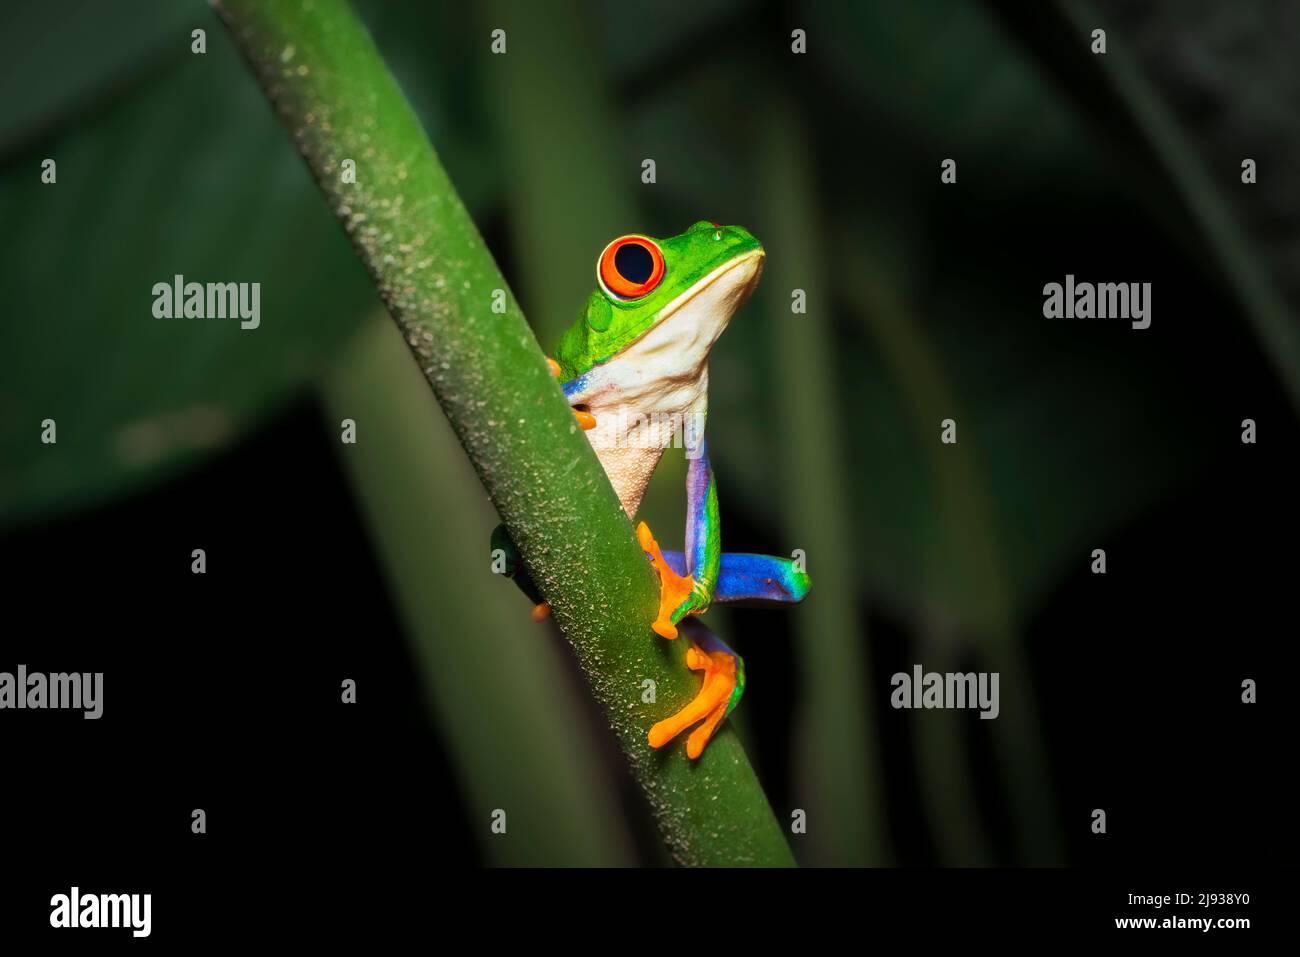 Retrato de una rana de árbol de ojos rojos o rana de hoja, o rana de hoja de gaudy (Agalychnis callidyas) en un tallo de planta tropical. Ranas de Costa Rica. Foto de stock